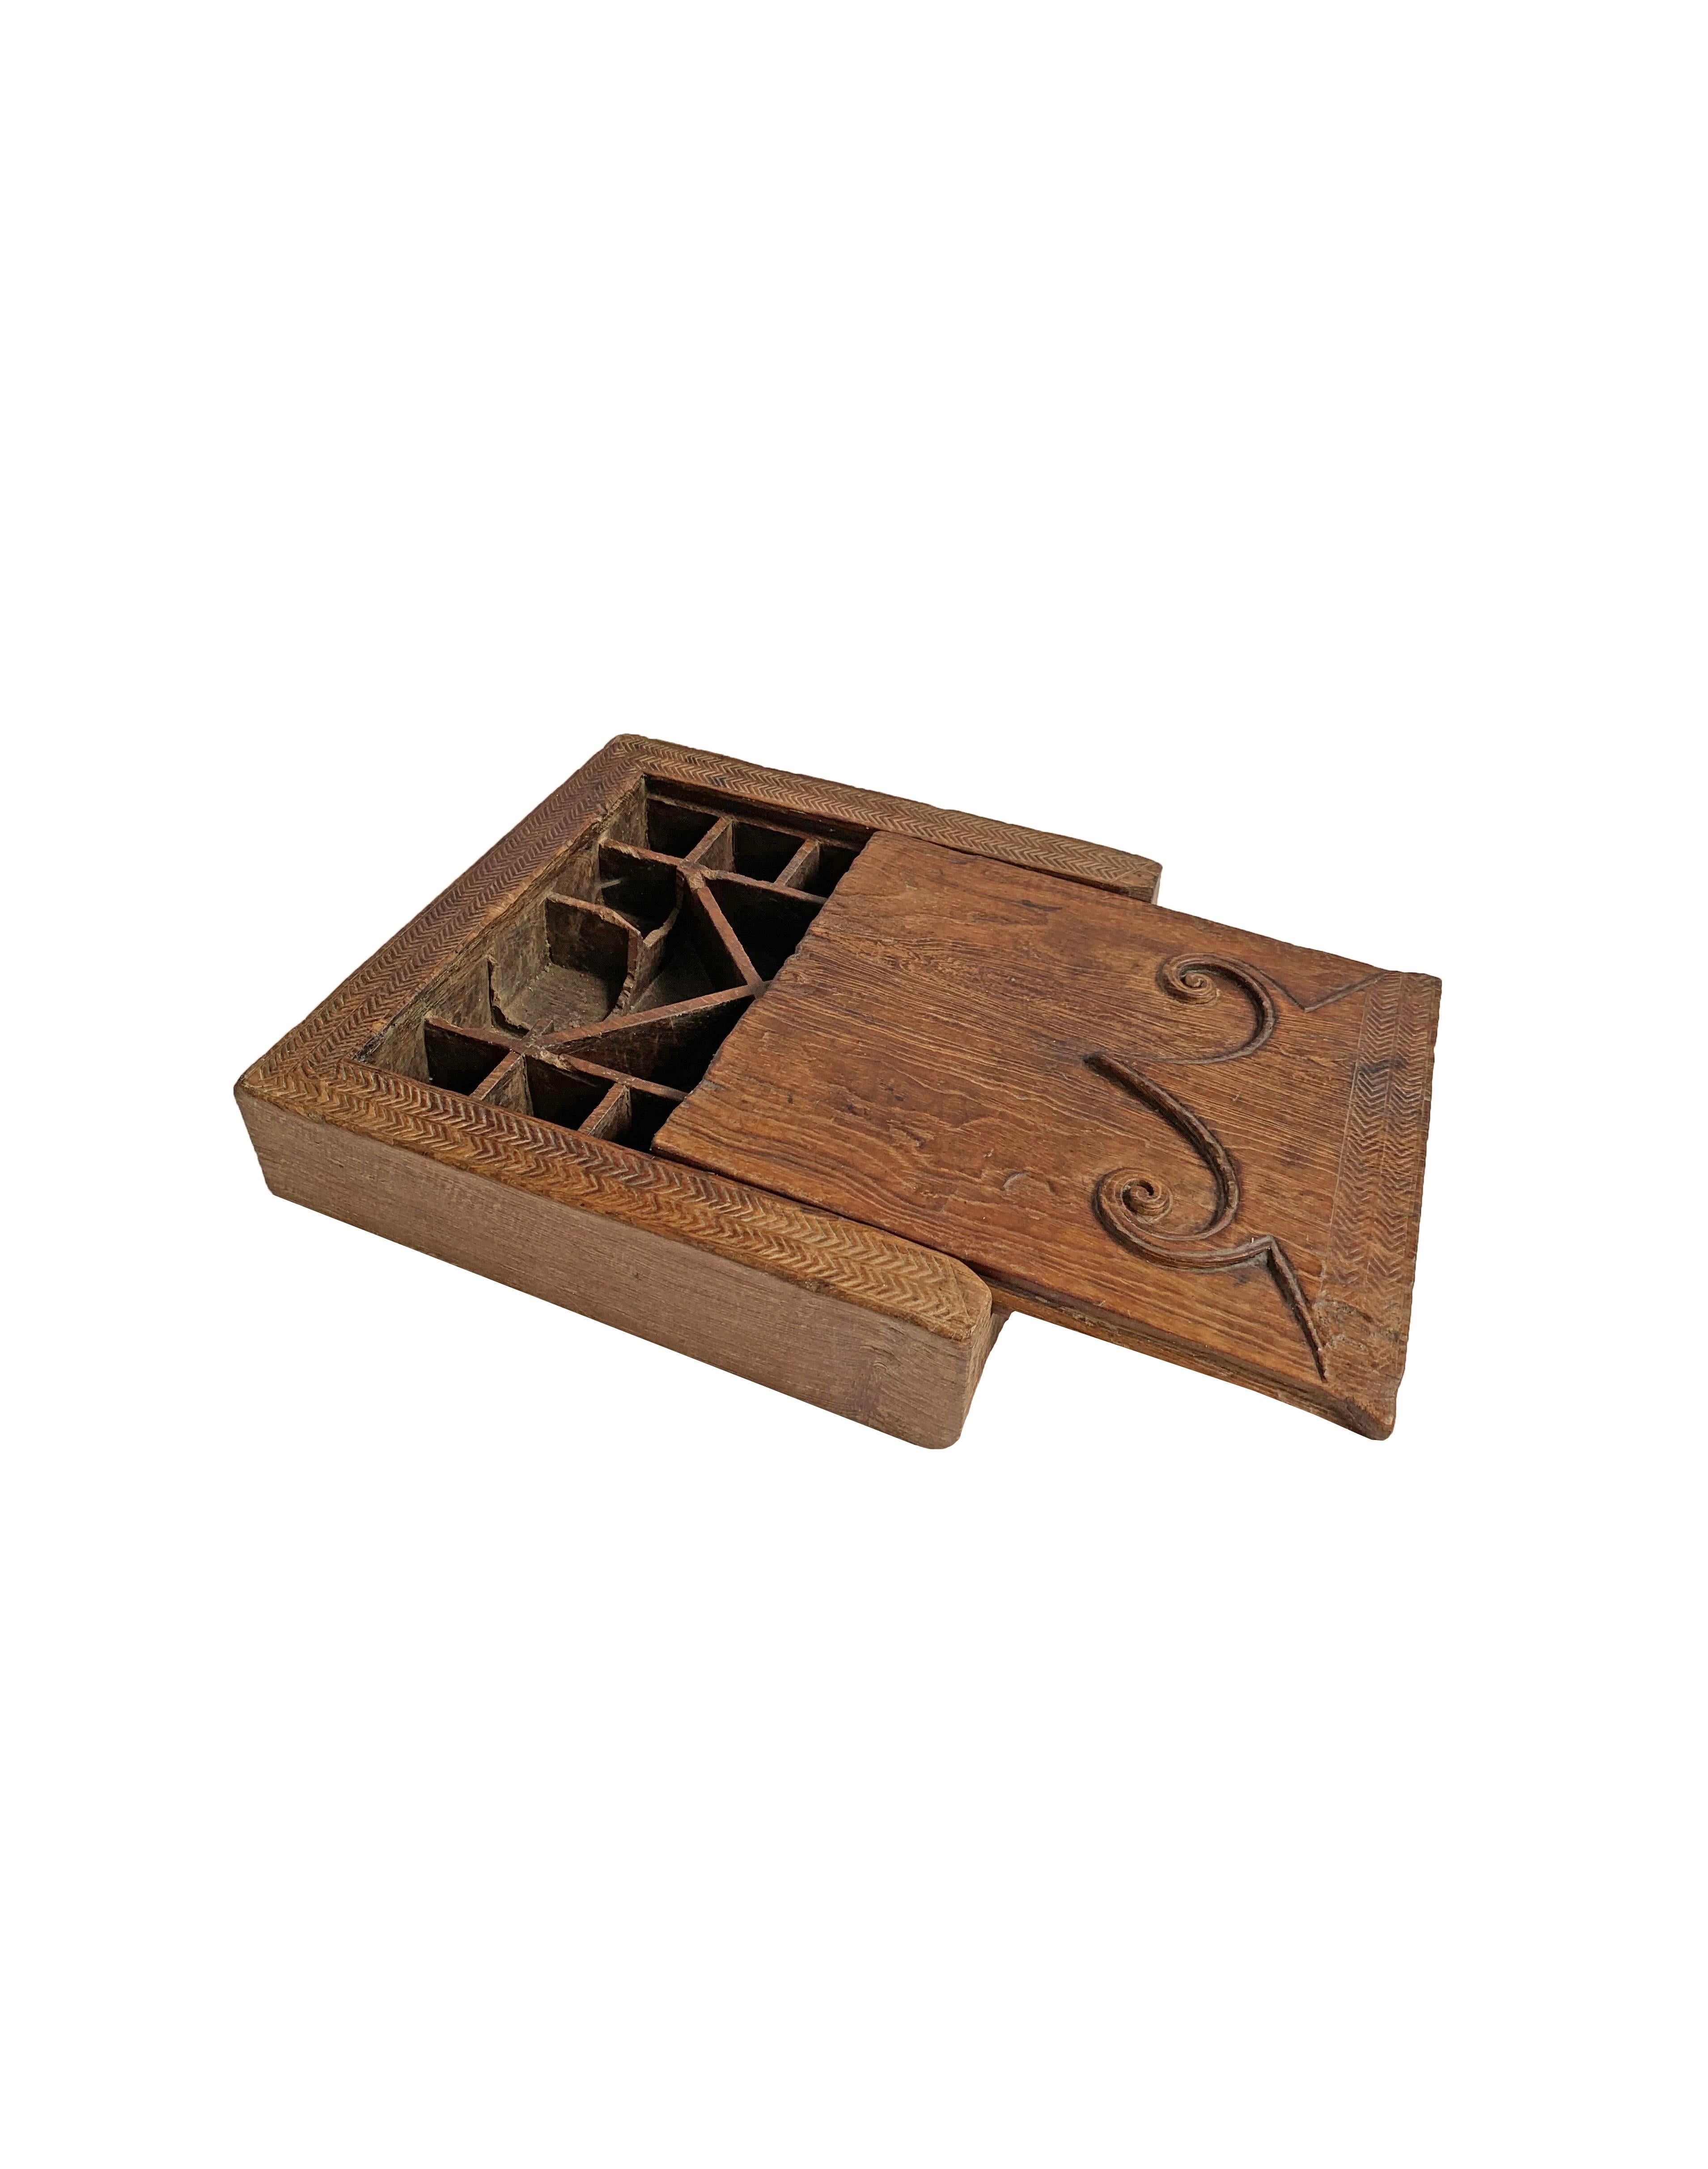 Cette boîte à épices provient de l'île de Nias, en Indonésie. Datant du début du XXe siècle, il a été fabriqué à partir d'un seul bloc de bois. Il est doté d'un couvercle coulissant, d'une élégante texture de bois et d'étonnantes gravures tribales